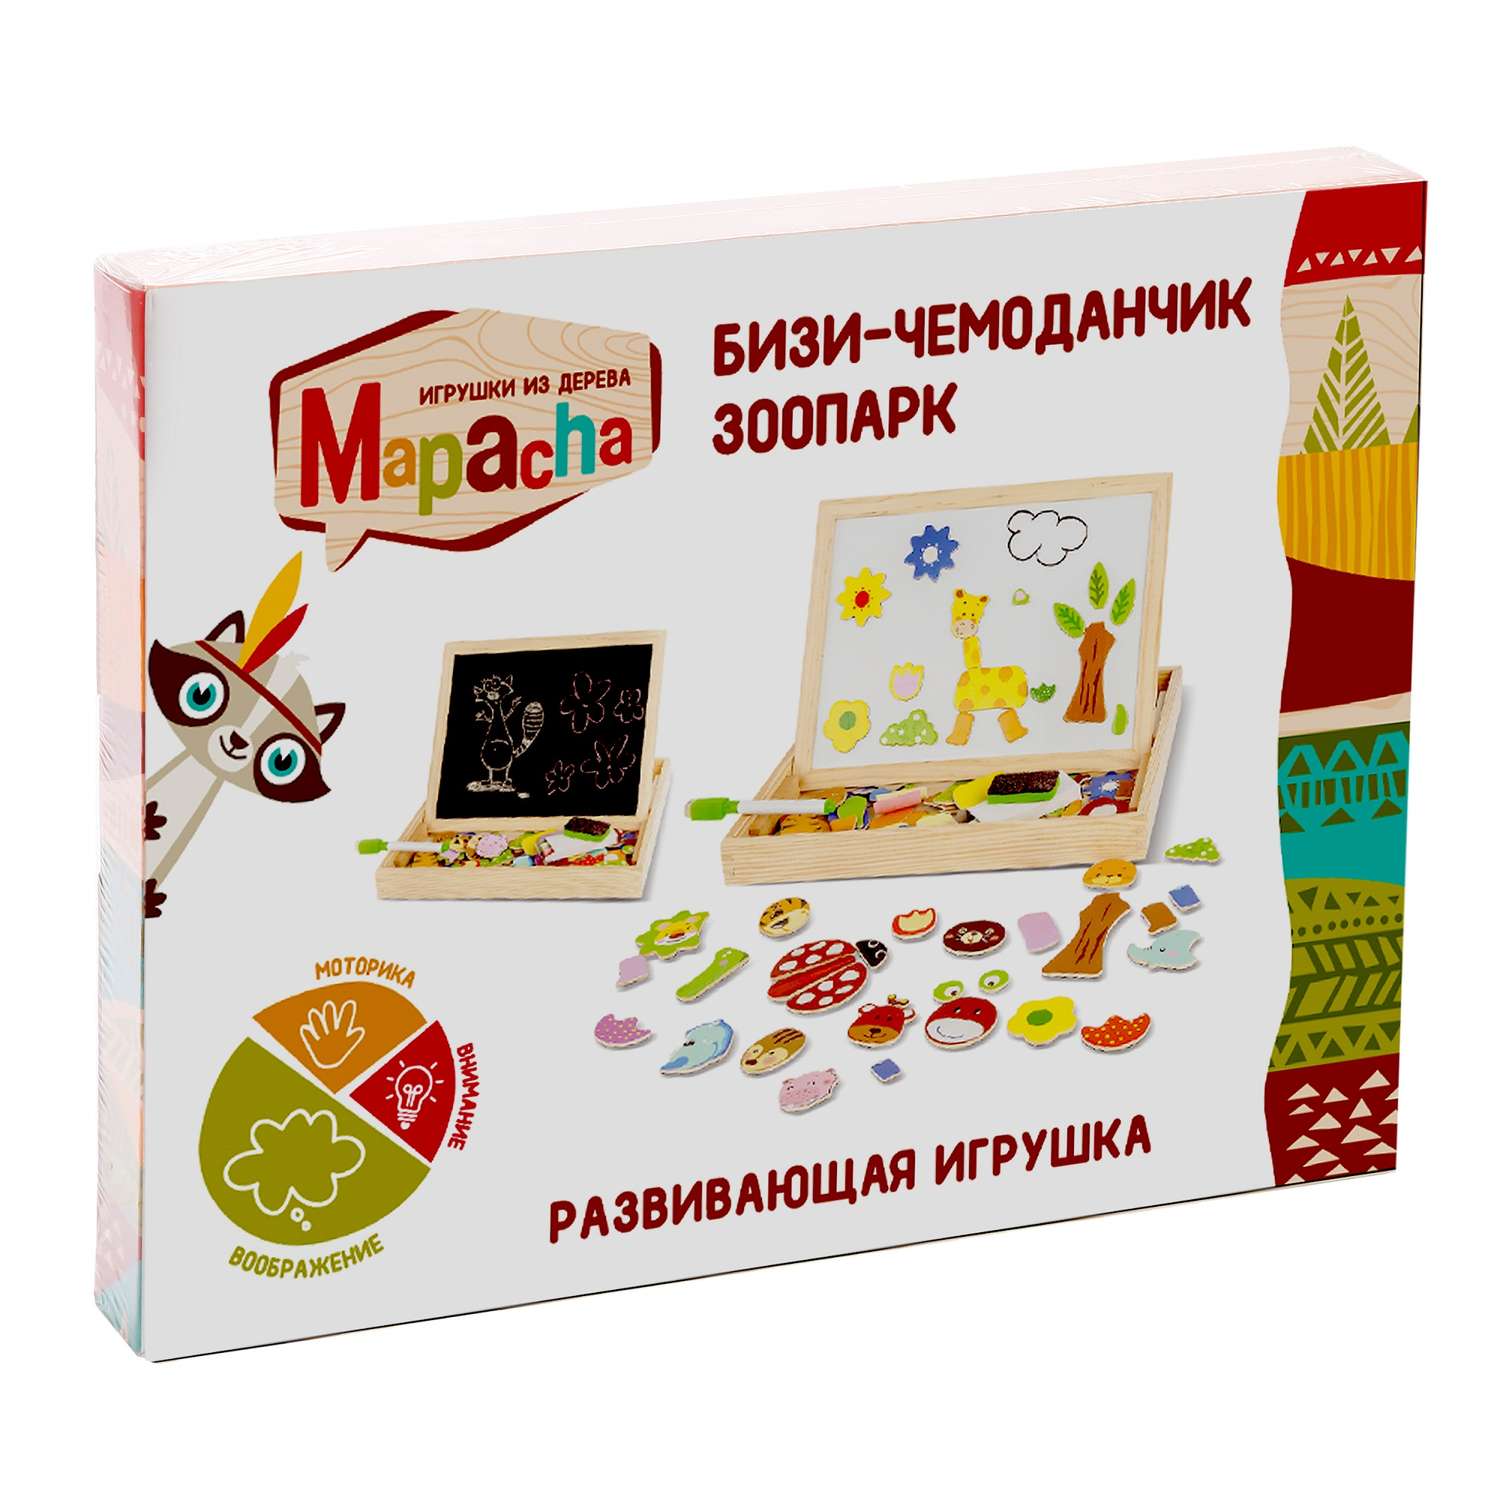 Развивающая игрушка Mapacha для рисования с магнитными фигурками буквами подготовка к школе - фото 2